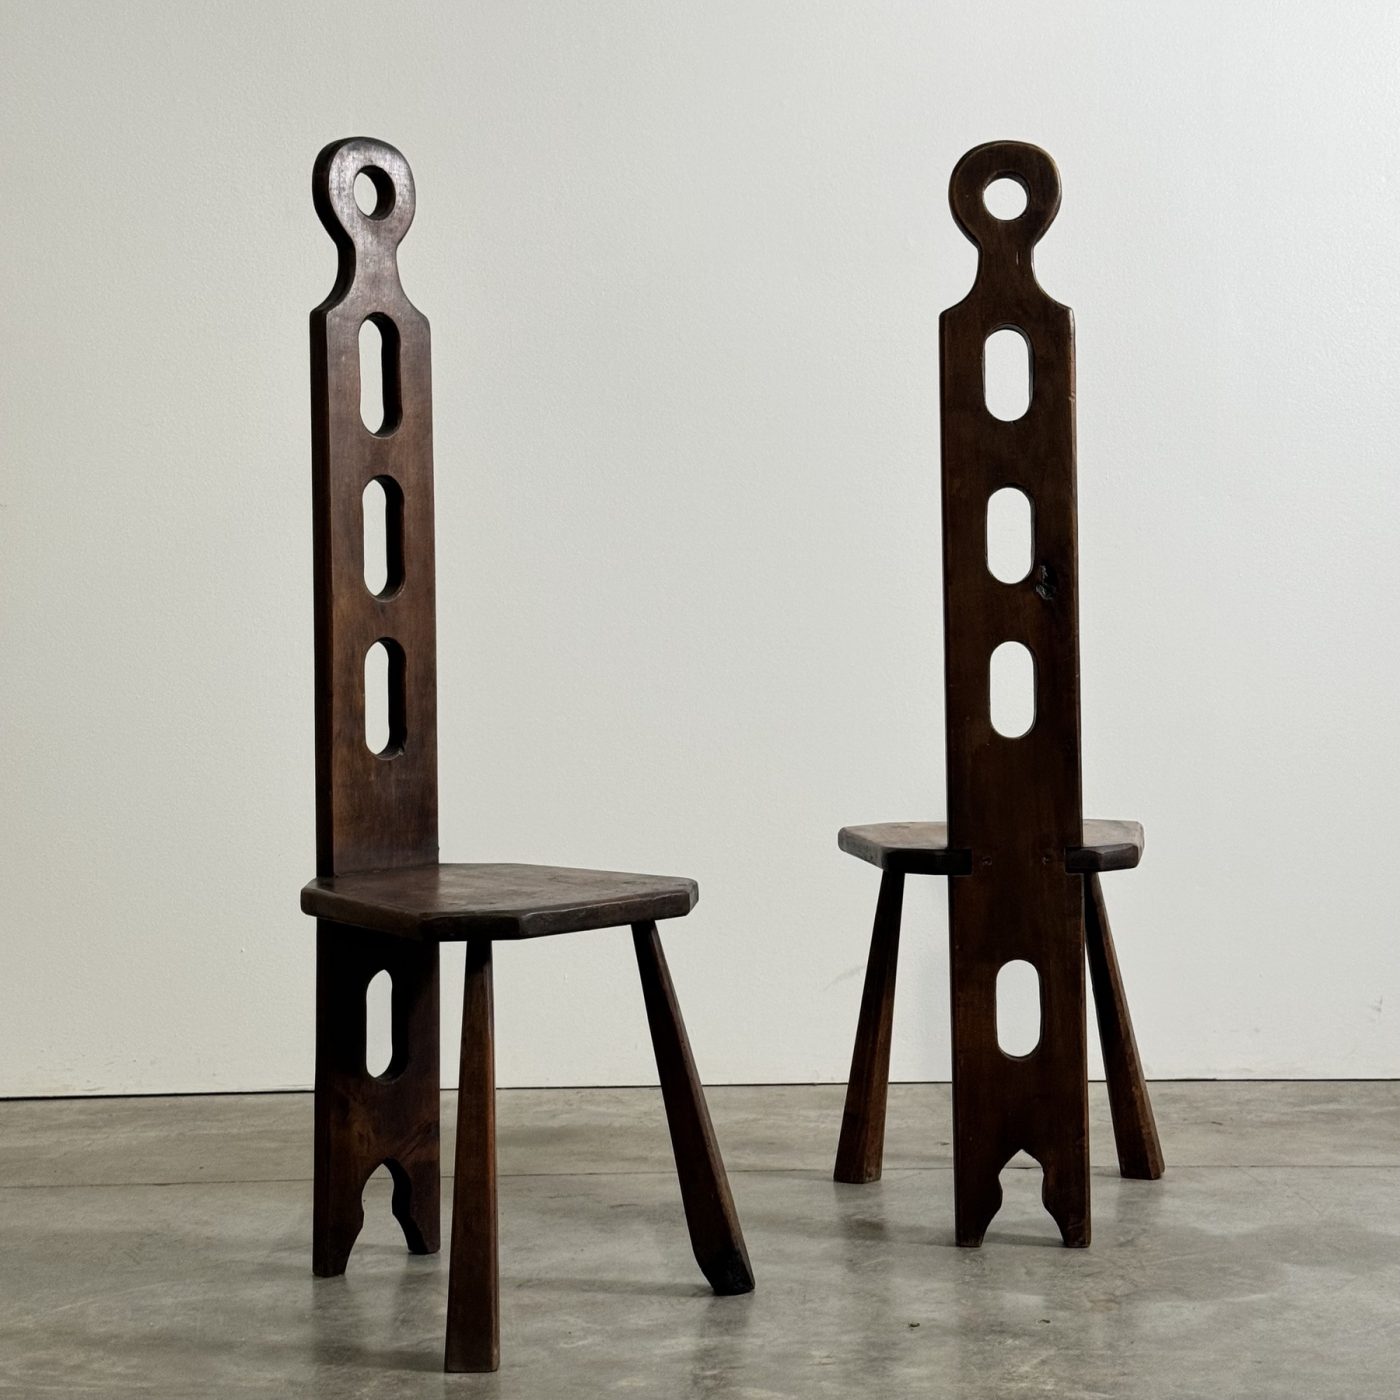 objet-vagabond-tripod-chairs0006